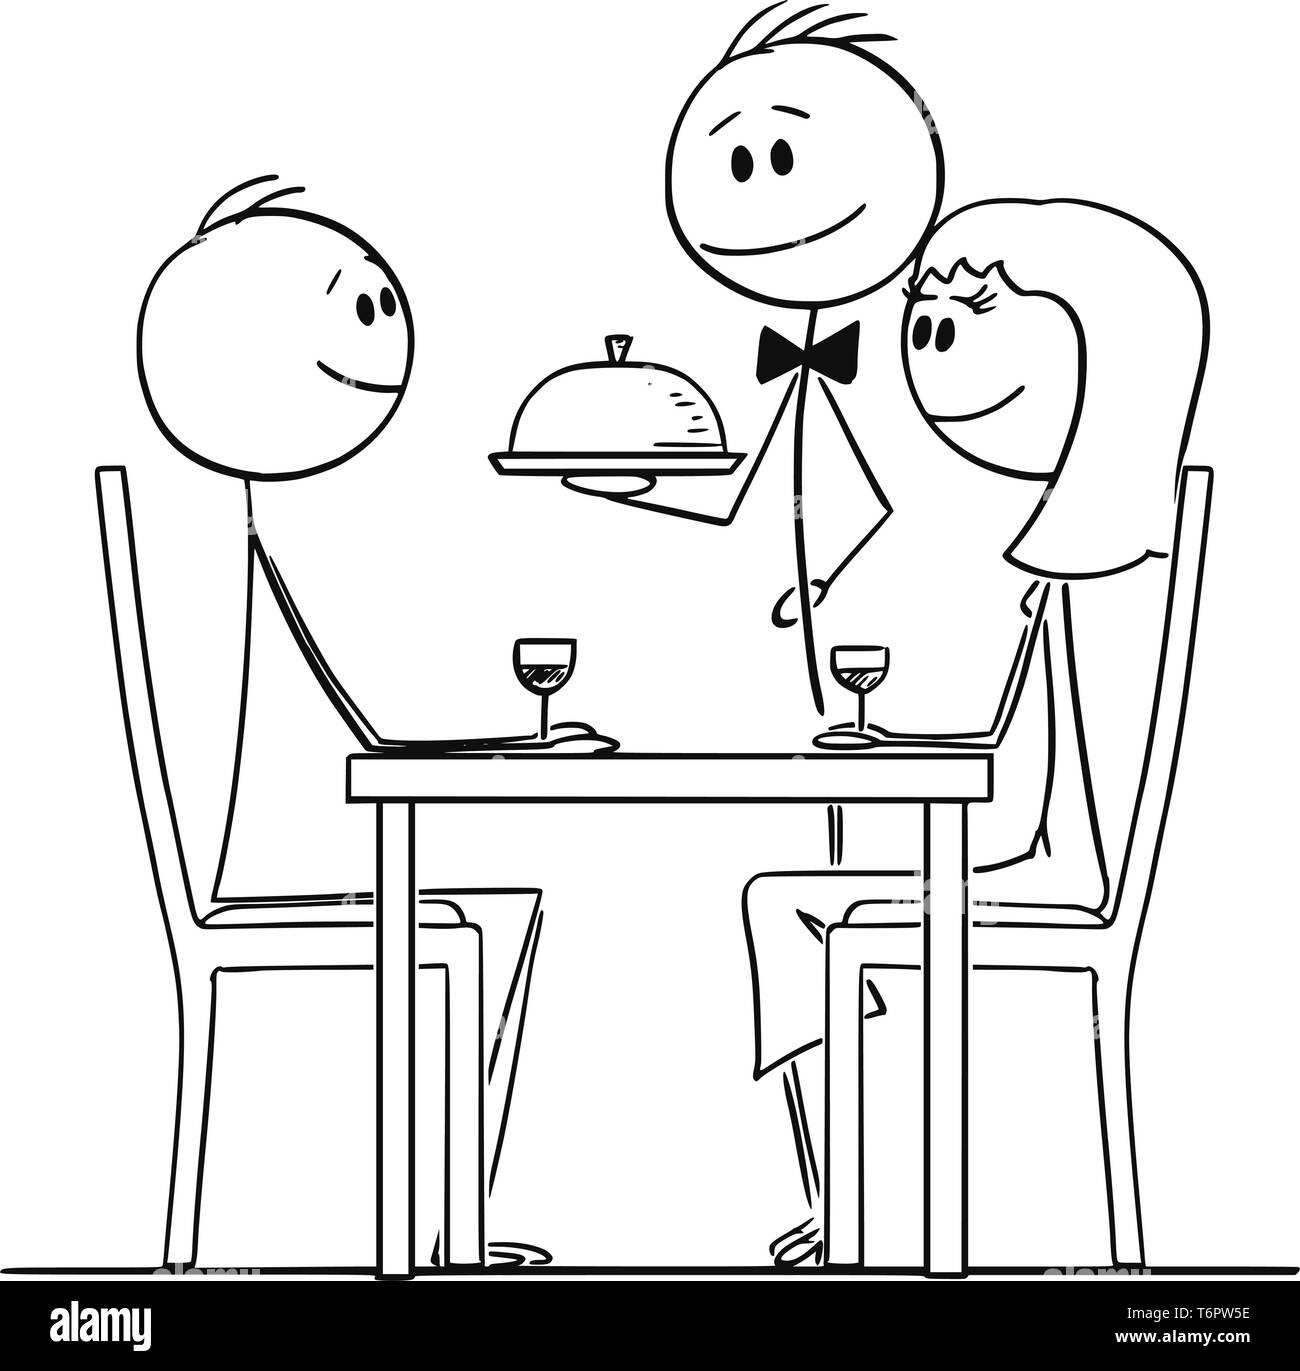 Cartoon Strichmännchen Zeichnen konzeptionelle Darstellung der liebenden Paar von Mann und Frau, hinter einem Tisch im Restaurant und die Kellner serviert. Stock Vektor